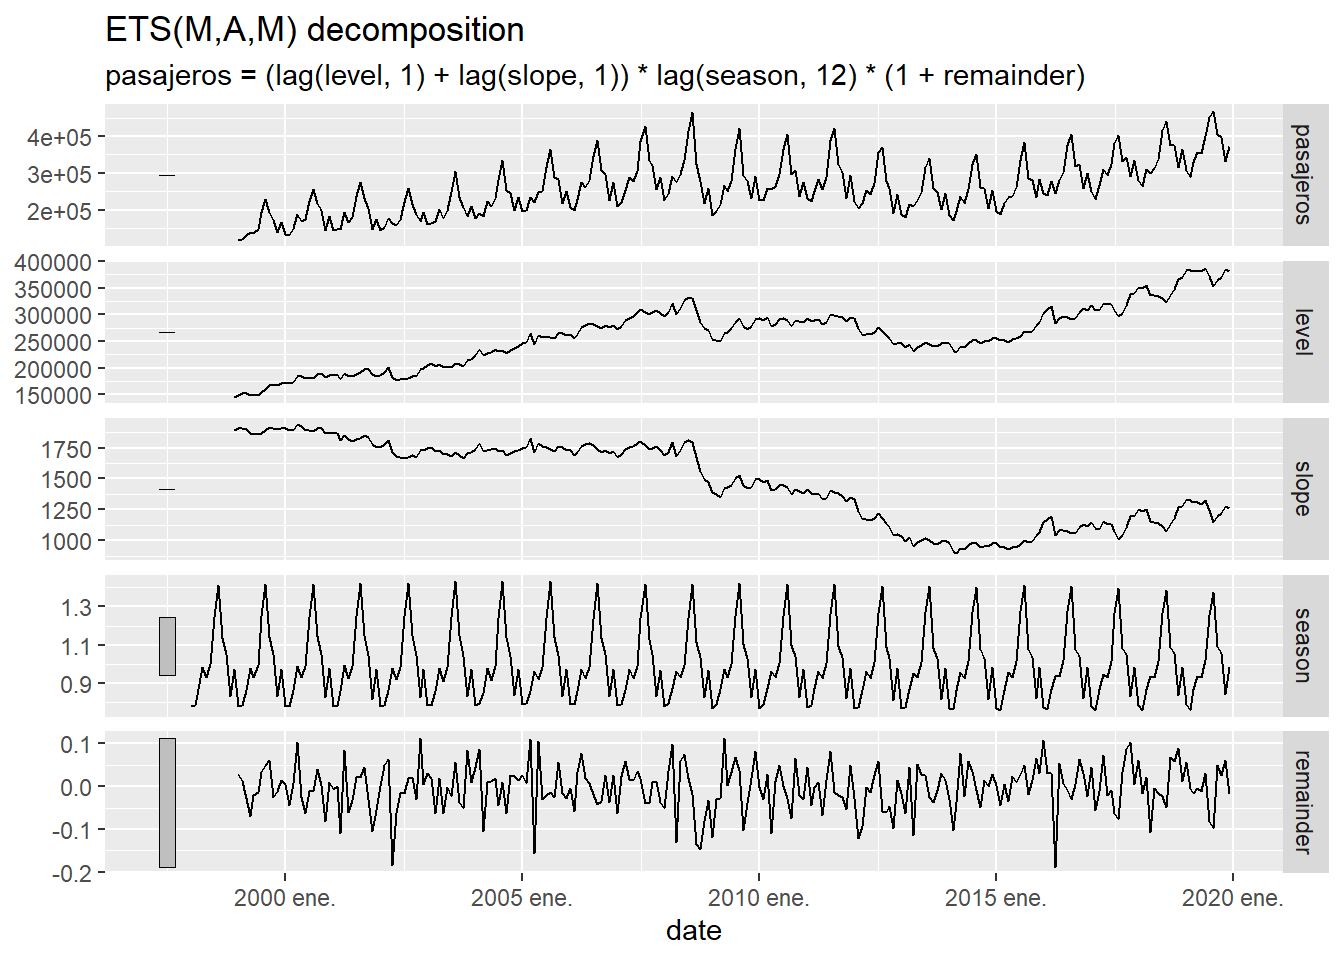 Descomposición de la serie temporal de llegadas a las aeropuertos canarios usando el modelo de suavizado exponencial.